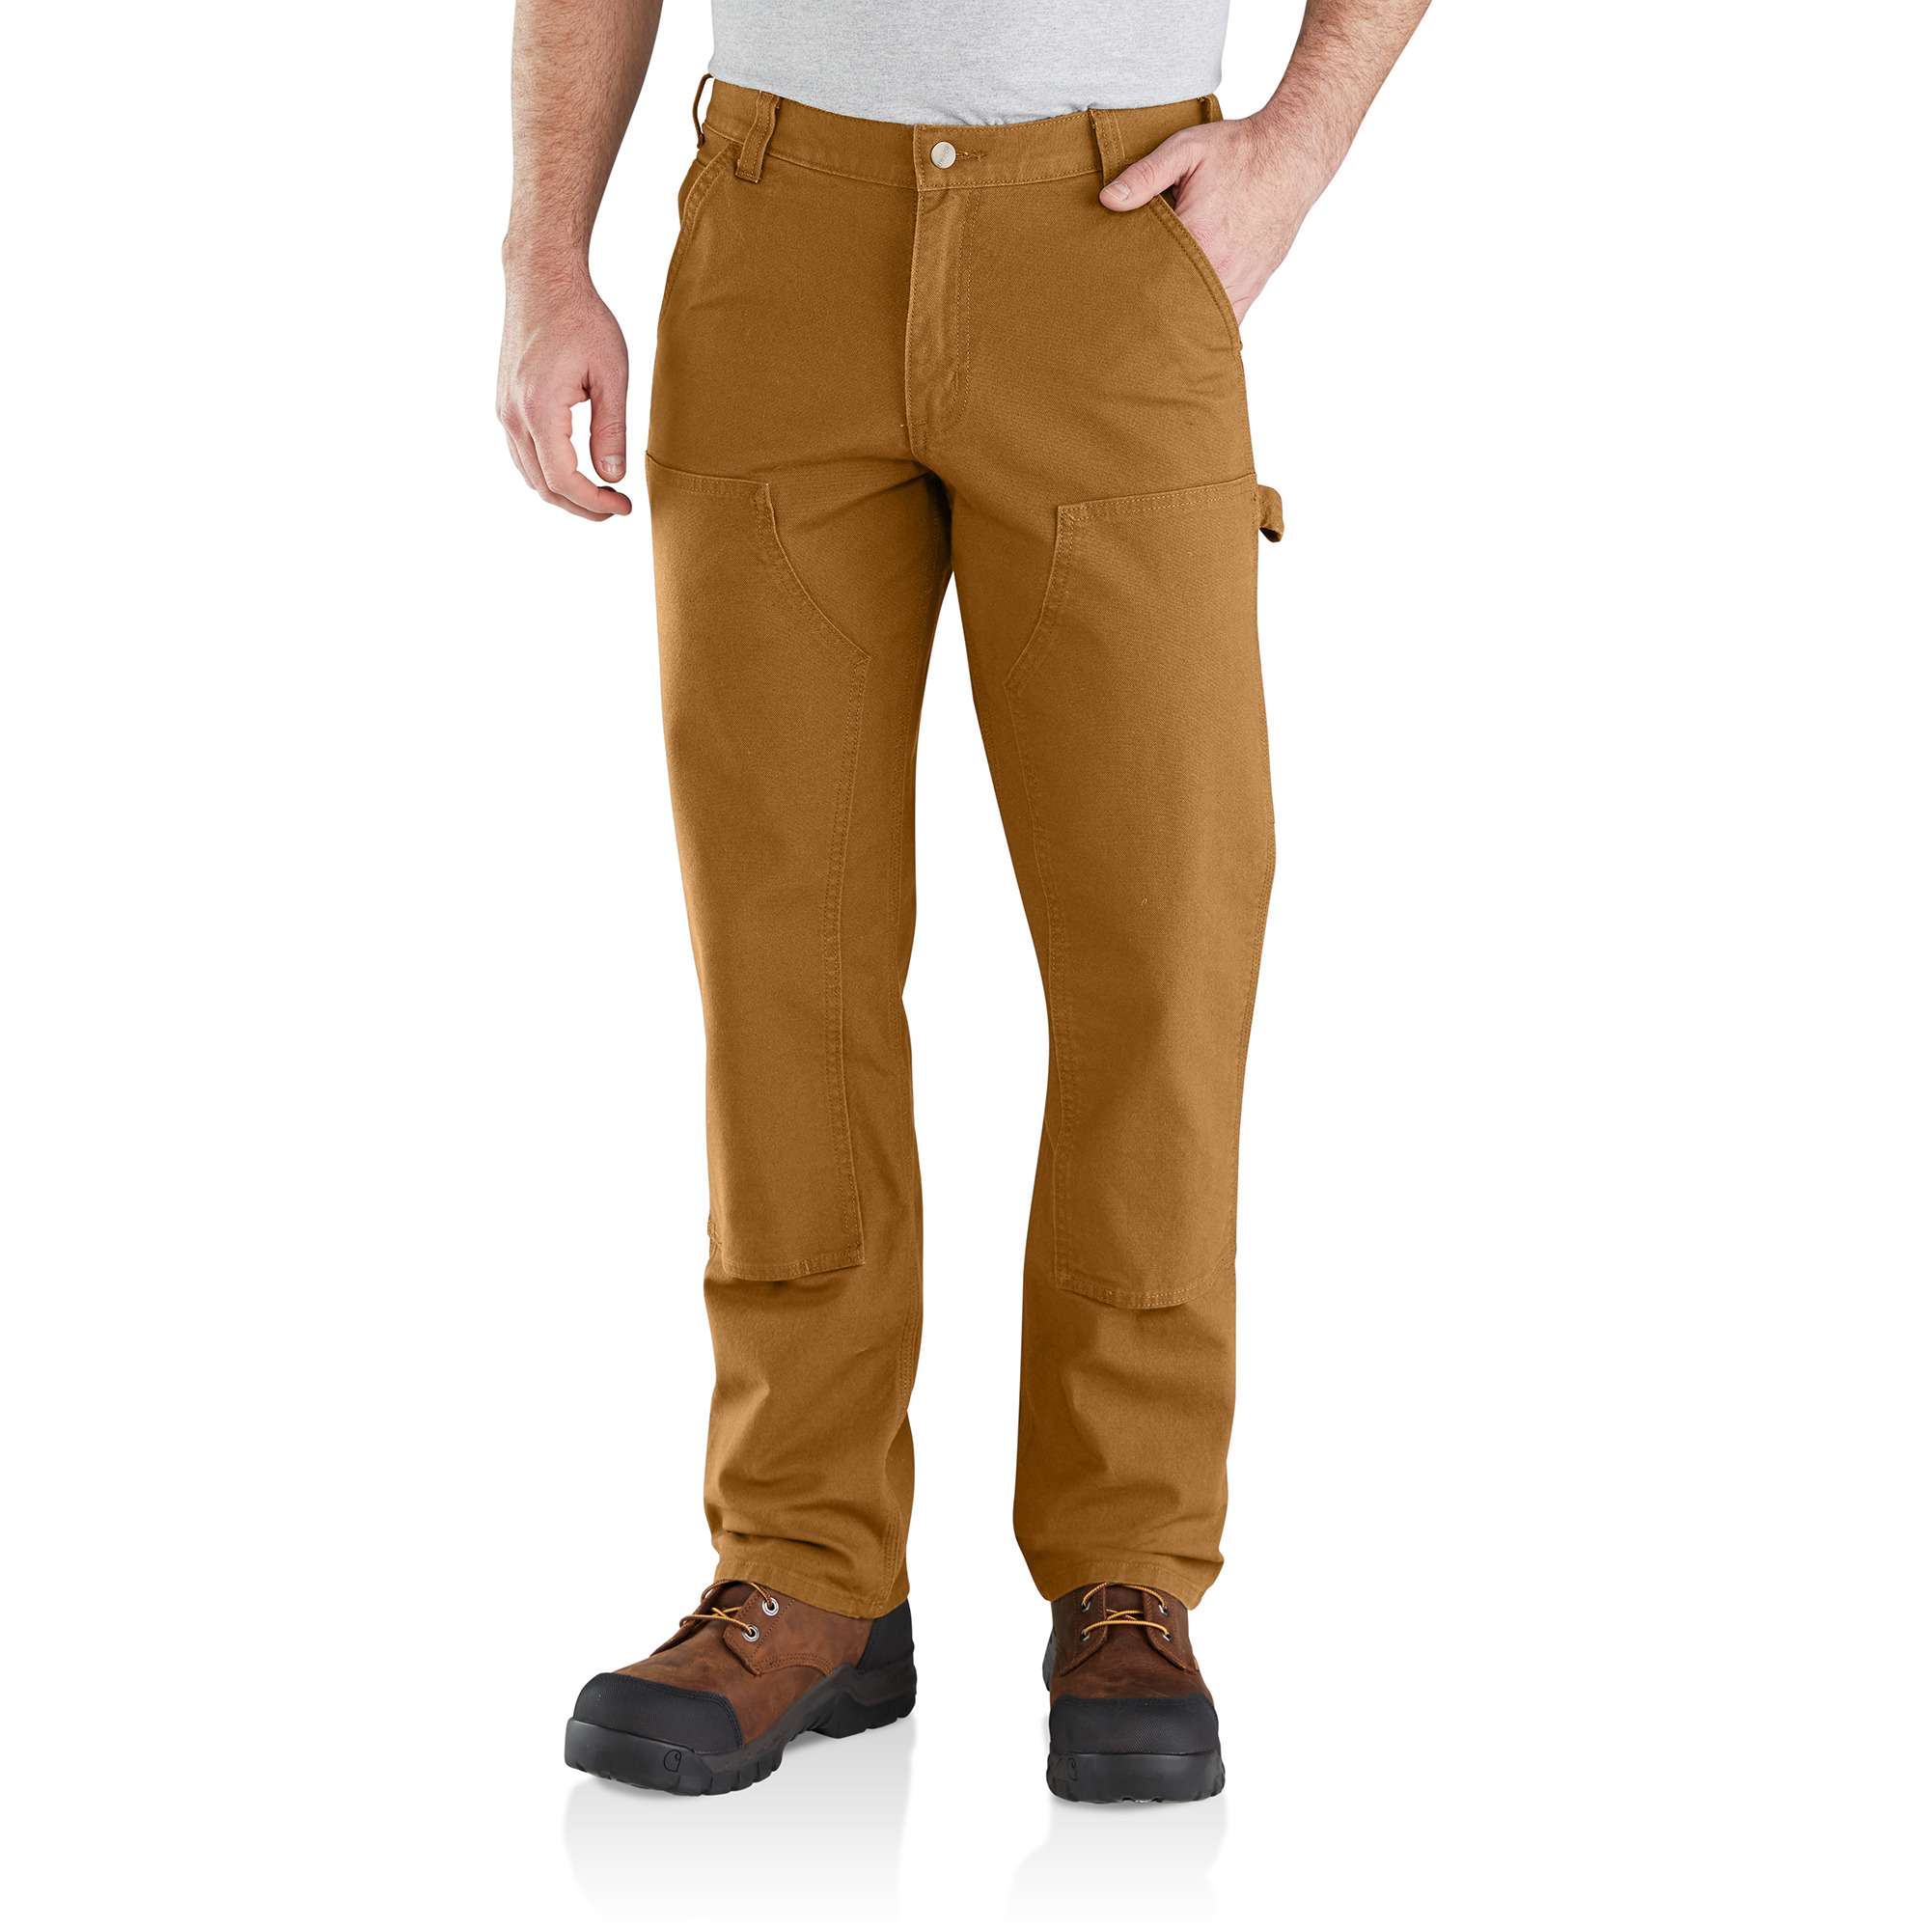 Carhartt Men's Carhartt Brown Duck Work Pants (32 x 34) in the